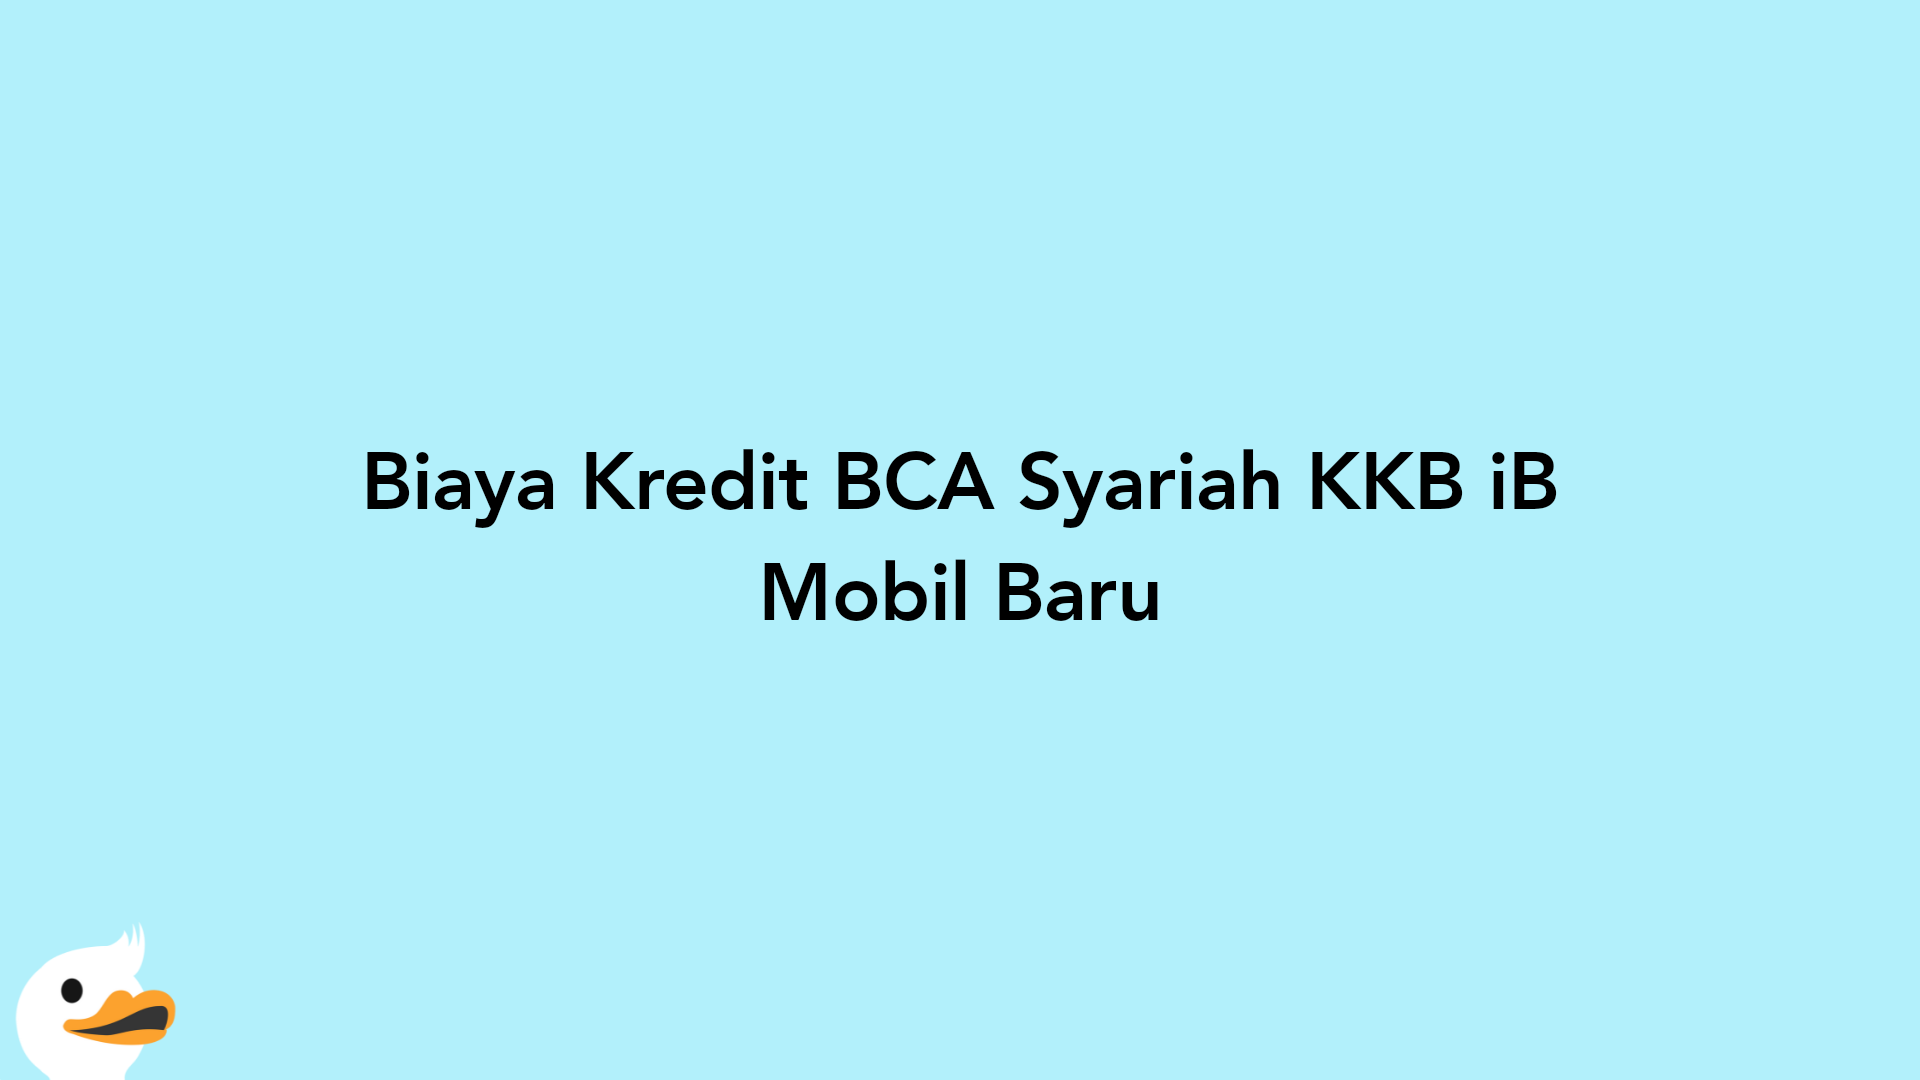 Biaya Kredit BCA Syariah KKB iB Mobil Baru